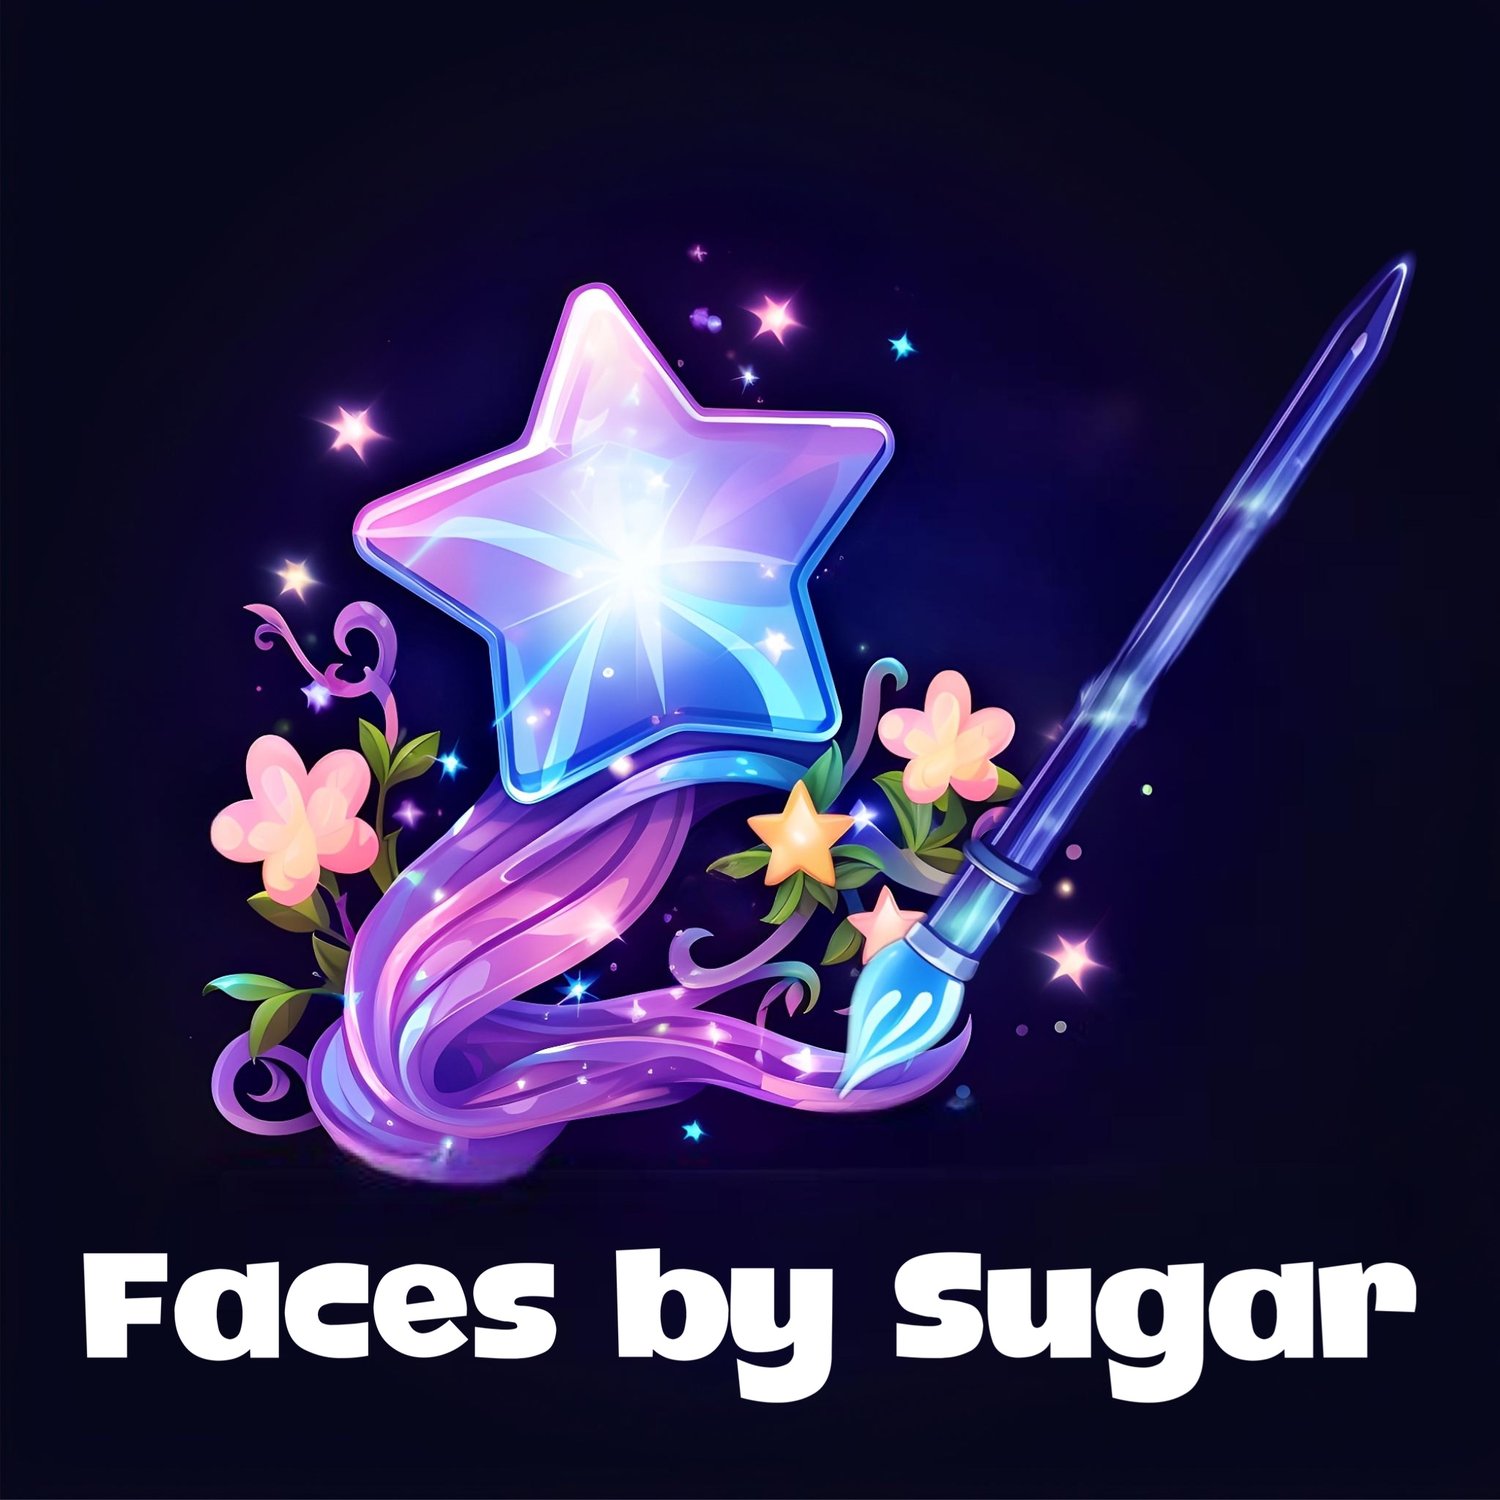 Faces by Sugar